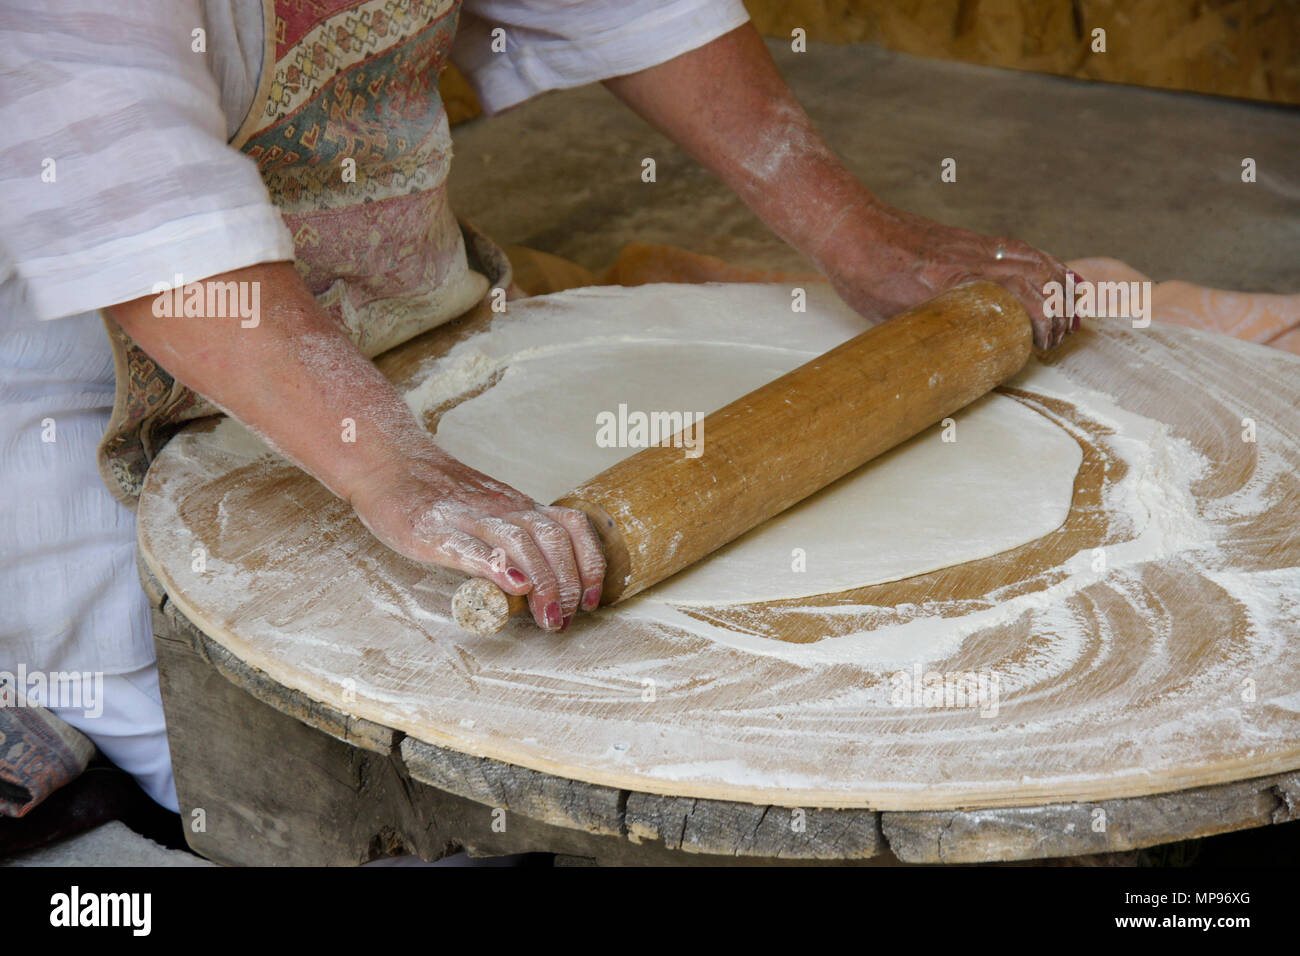 Eine Frau rollt Teig lavash (ein traditionelles Fladenbrot), das dann in einem Tandoor Ofen, Garni wird gebacken, Armenien zu machen Stockfoto